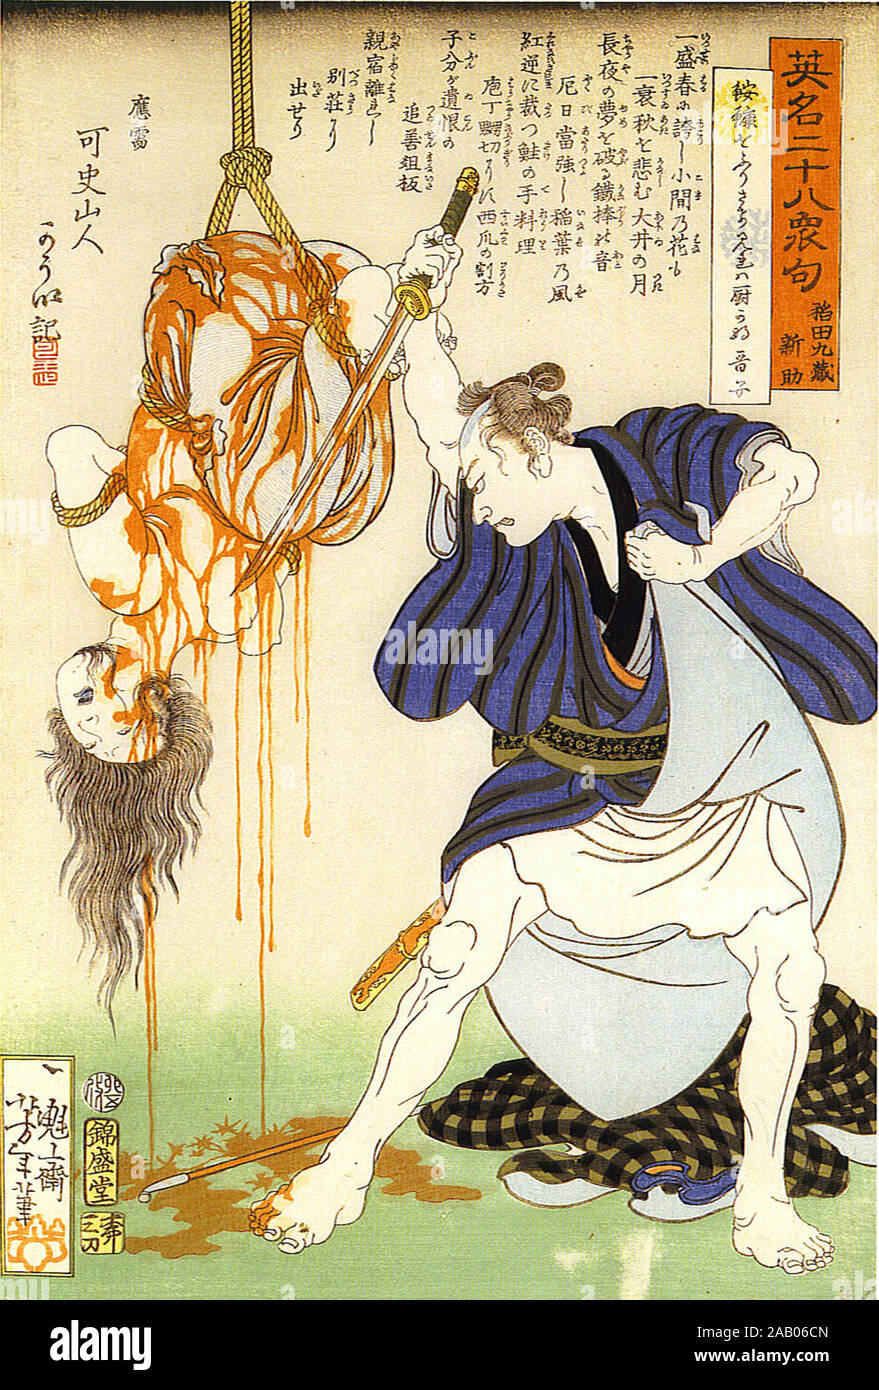 Eimei nijūhasshūku (veintiocho famosos asesinatos con el verso, 1867) por Yoshitoshi Tsukioka Foto de stock